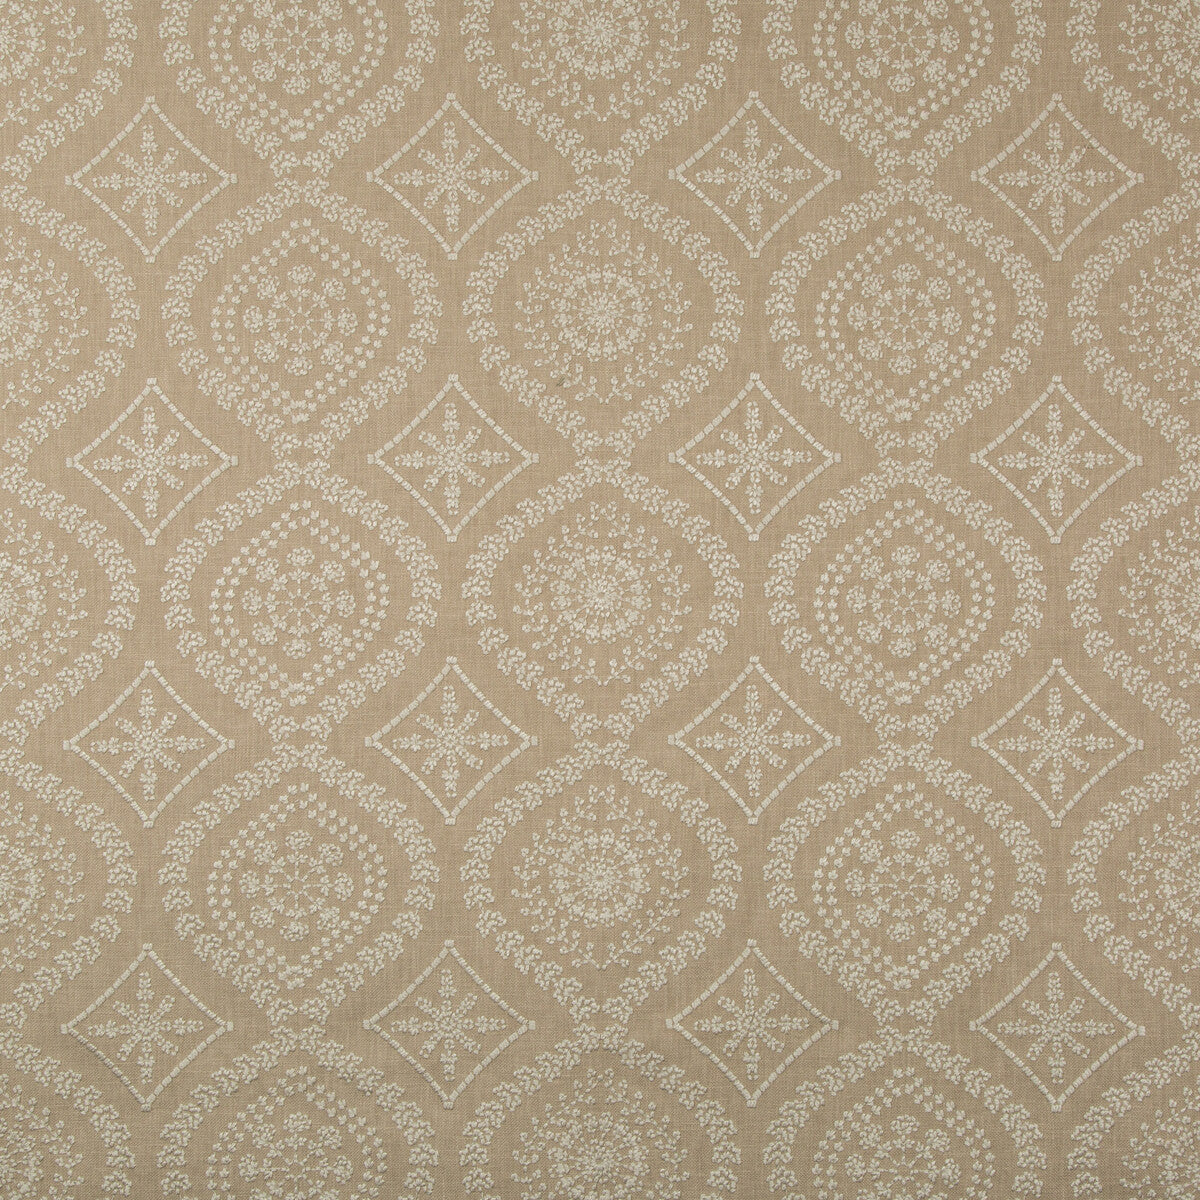 Kravet Basics fabric in 35788-16 color - pattern 35788.16.0 - by Kravet Basics